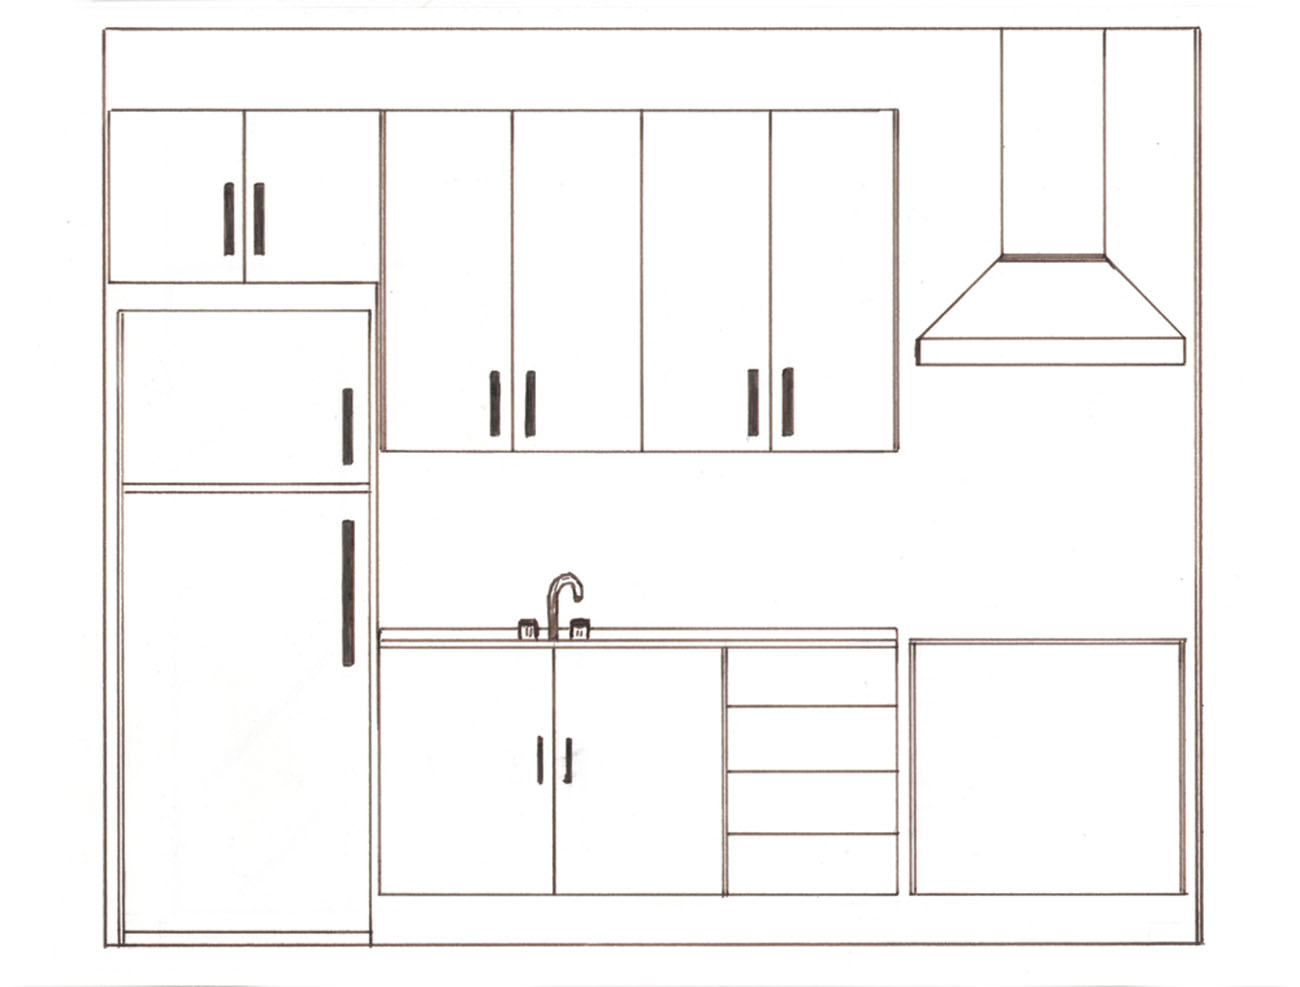 Desenho de cozinha com eletrodomésticos adequados